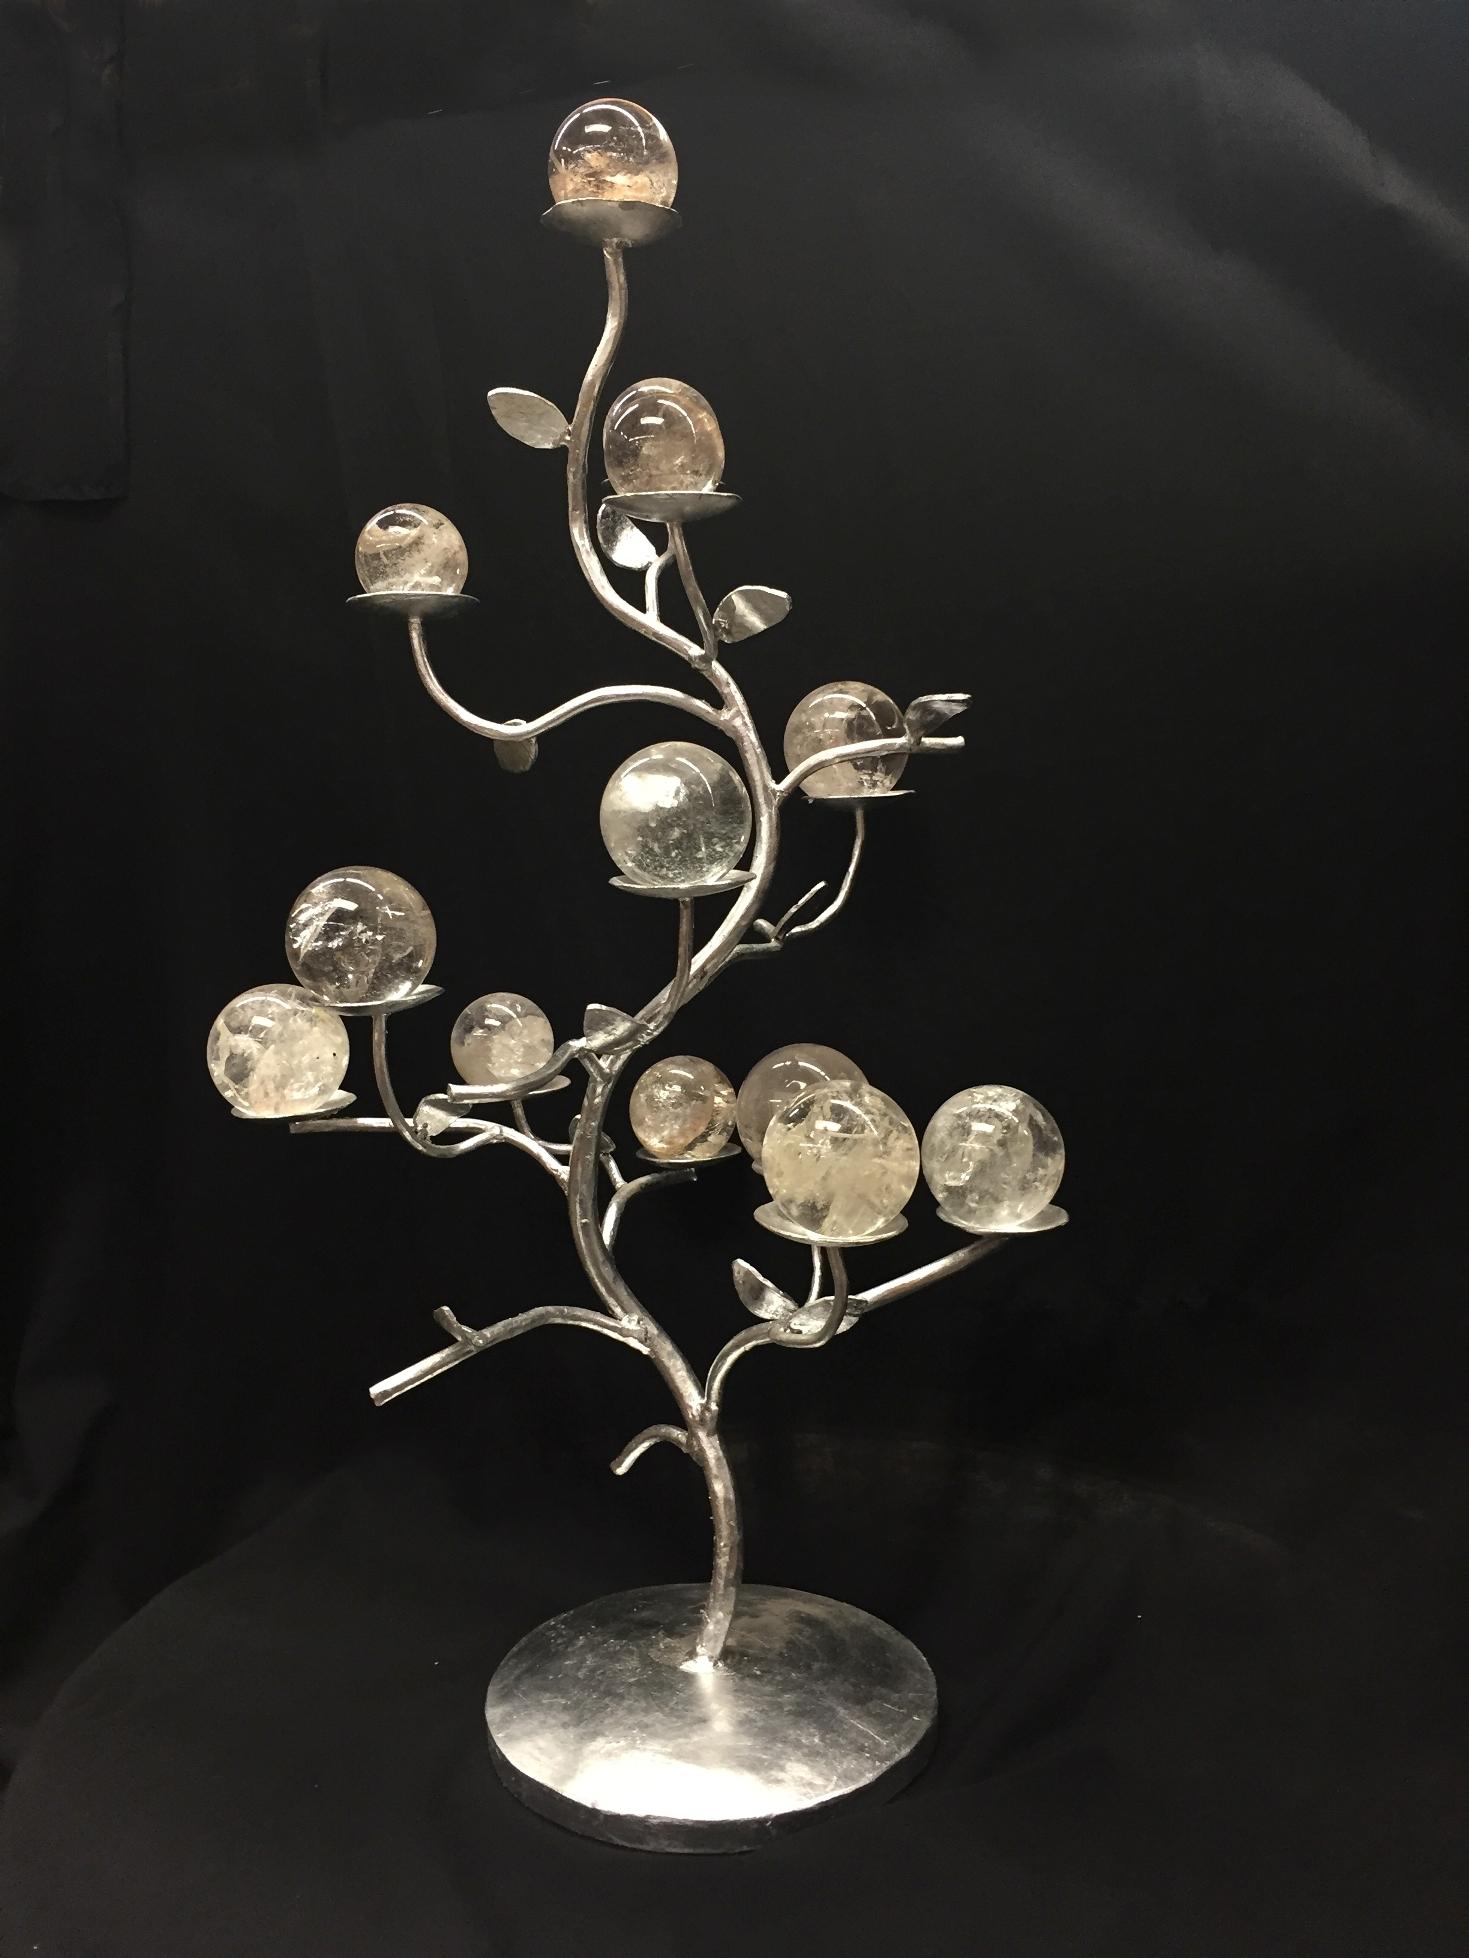 Eine einzigartige, moderne, handgeschmiedete, schmiedeeiserne Baumform mit 12 handpolierten Bergkristallkugeln in verschiedenen Größen.
Jede Bergkristallkugel ruht auf einzelnen kleinen Untertassen, die sich über das gesamte Mittelstück